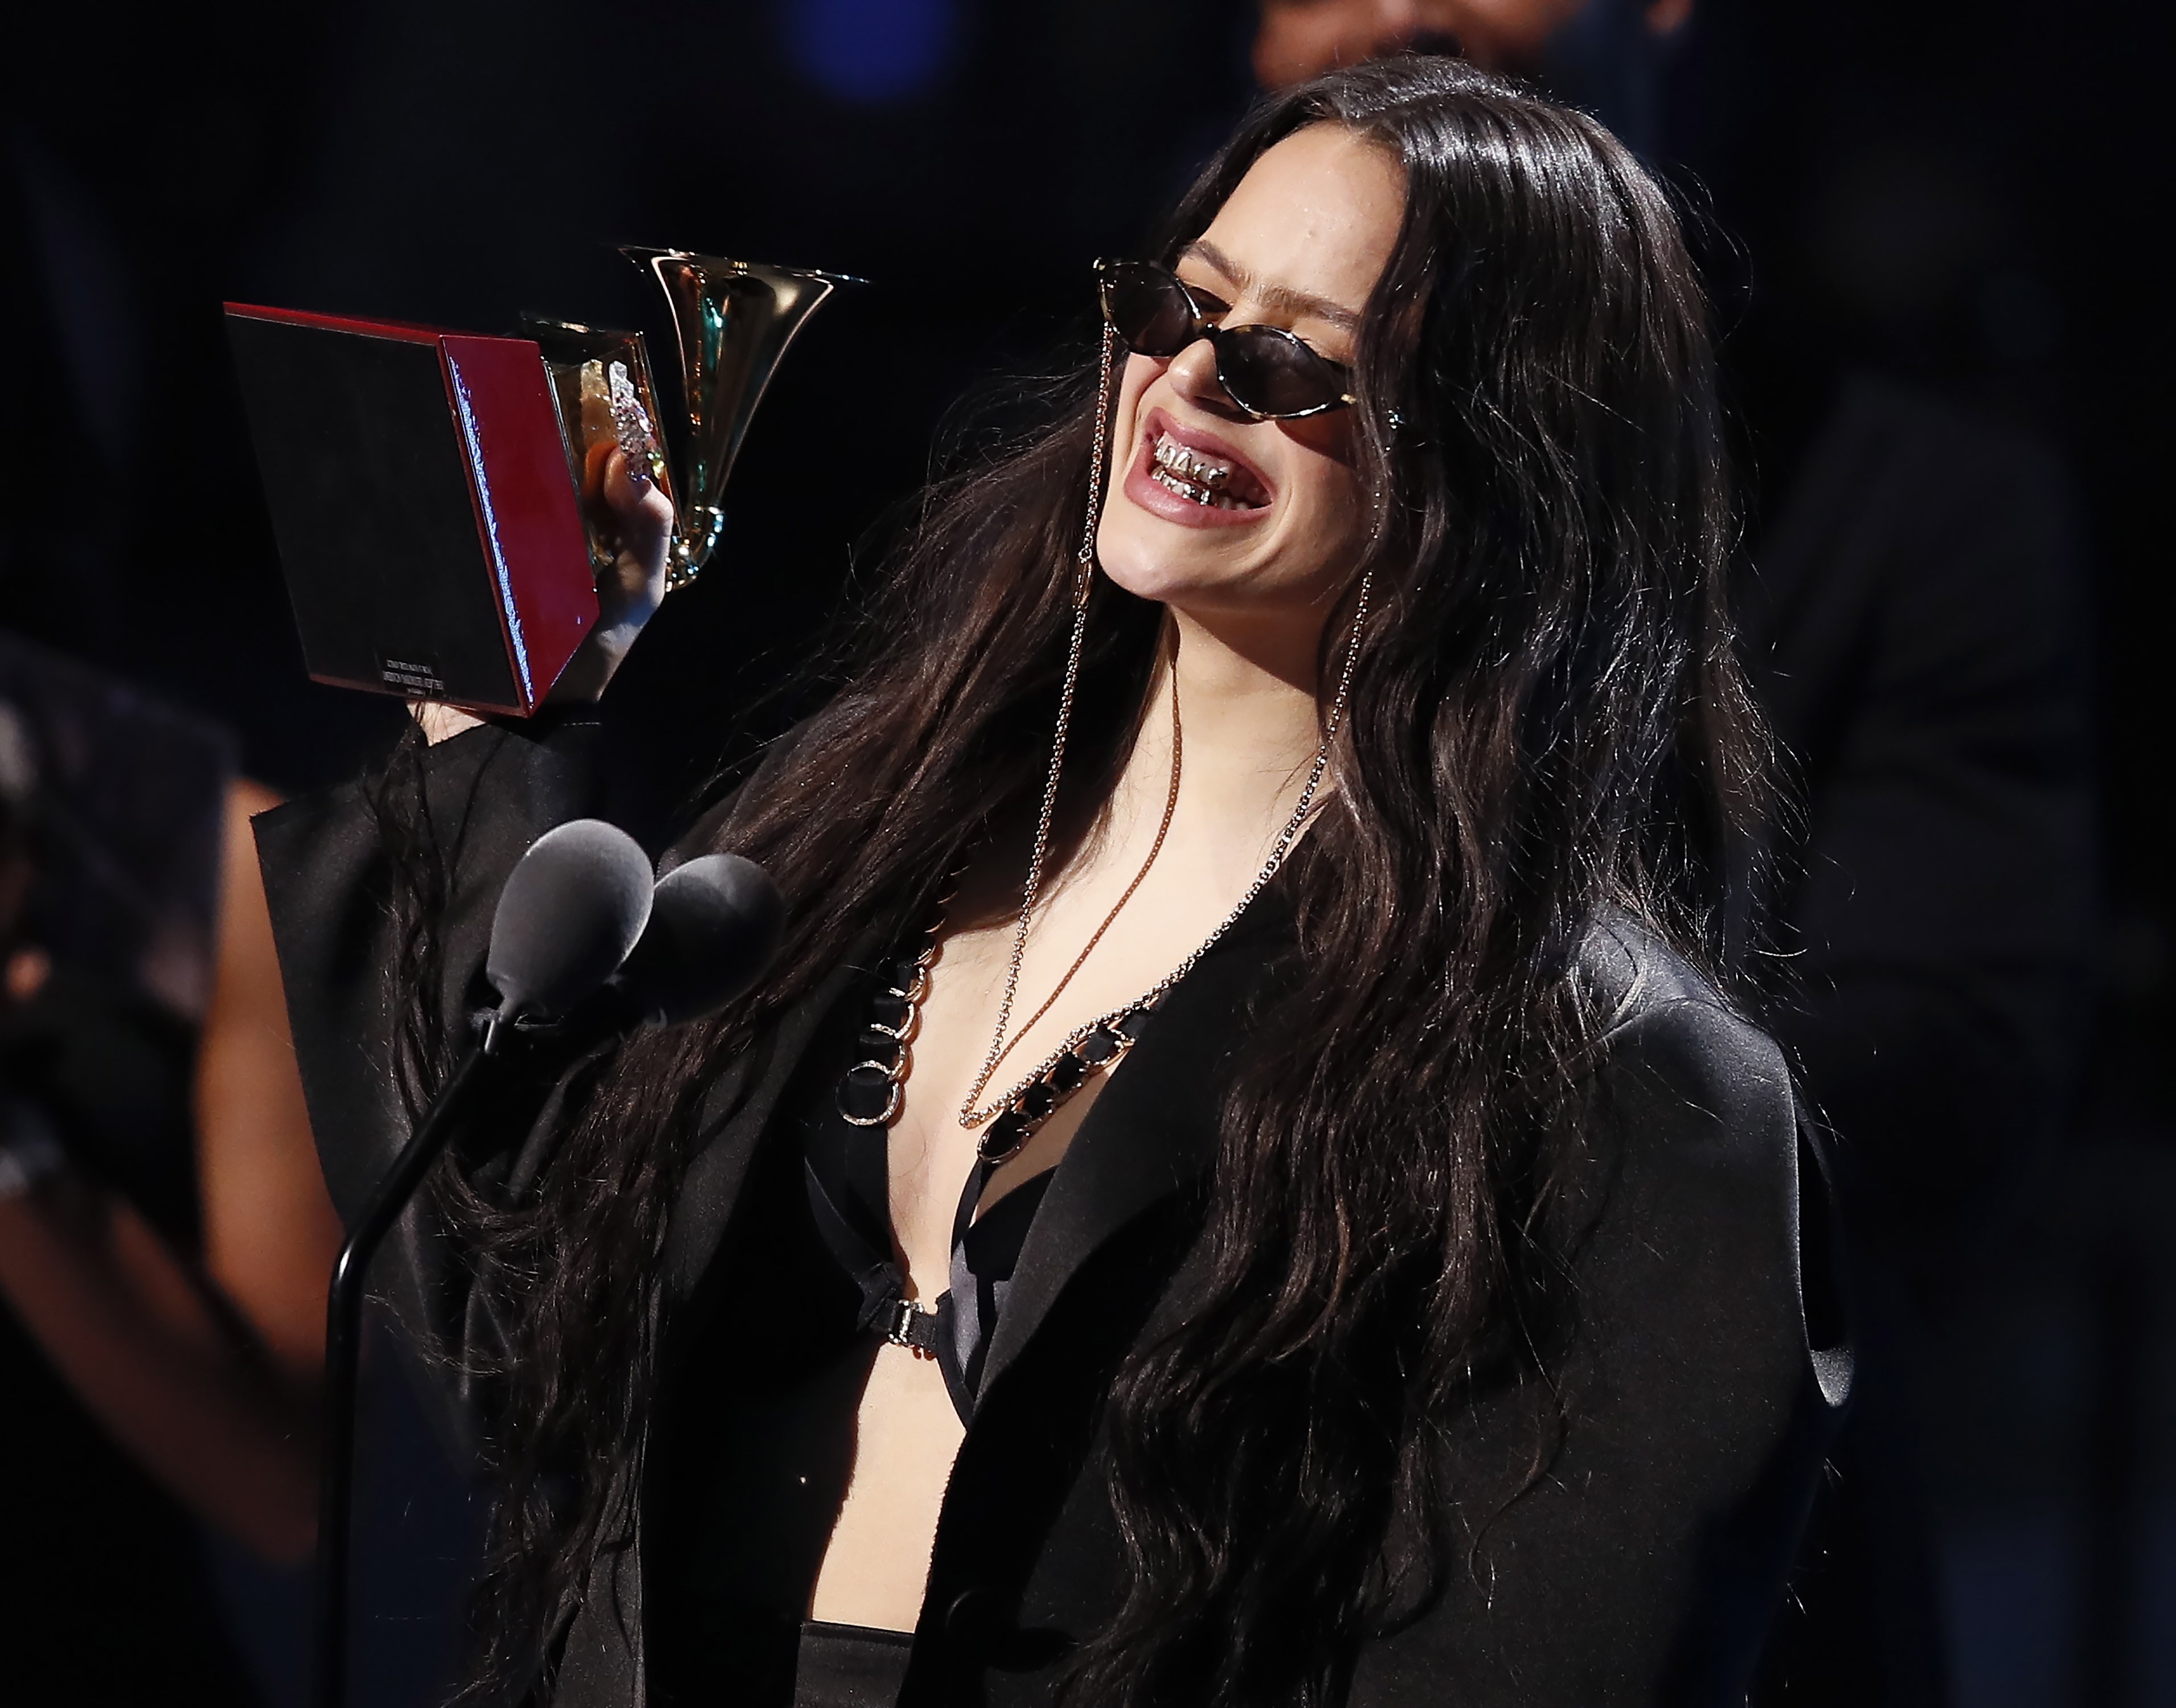  Rosalía gana el Latin Grammy al Álbum del año por “El mal querer”